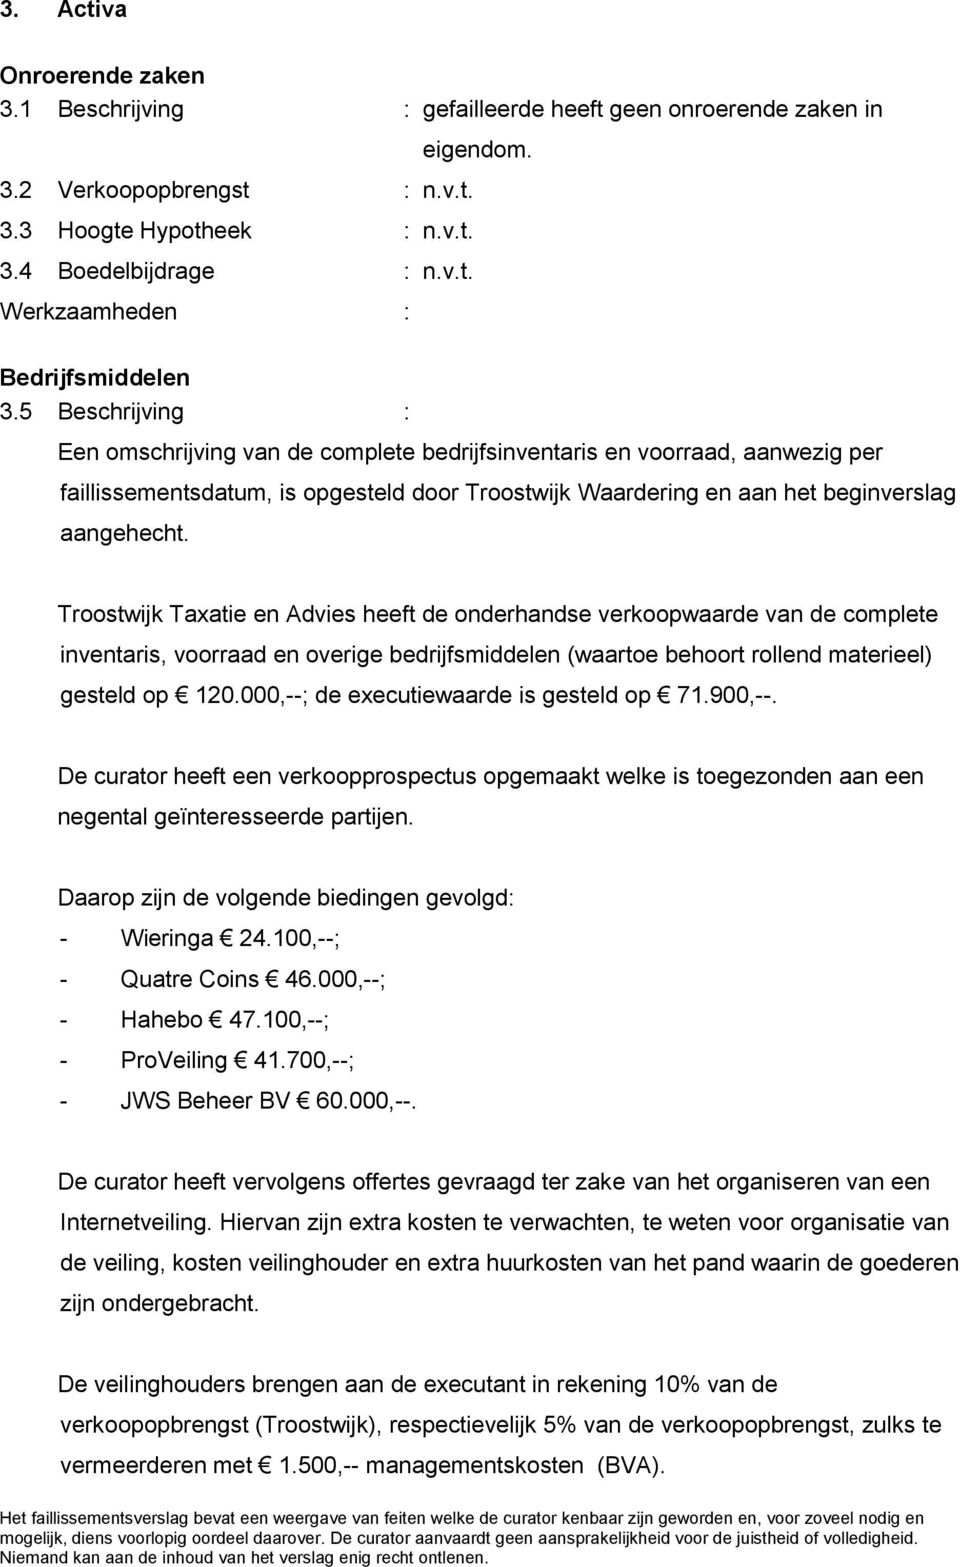 Een omschrijving van de complete bedrijfsinventaris en voorraad, aanwezig per faillissementsdatum, is opgesteld door Troostwijk Waardering en aan het beginverslag aangehecht.